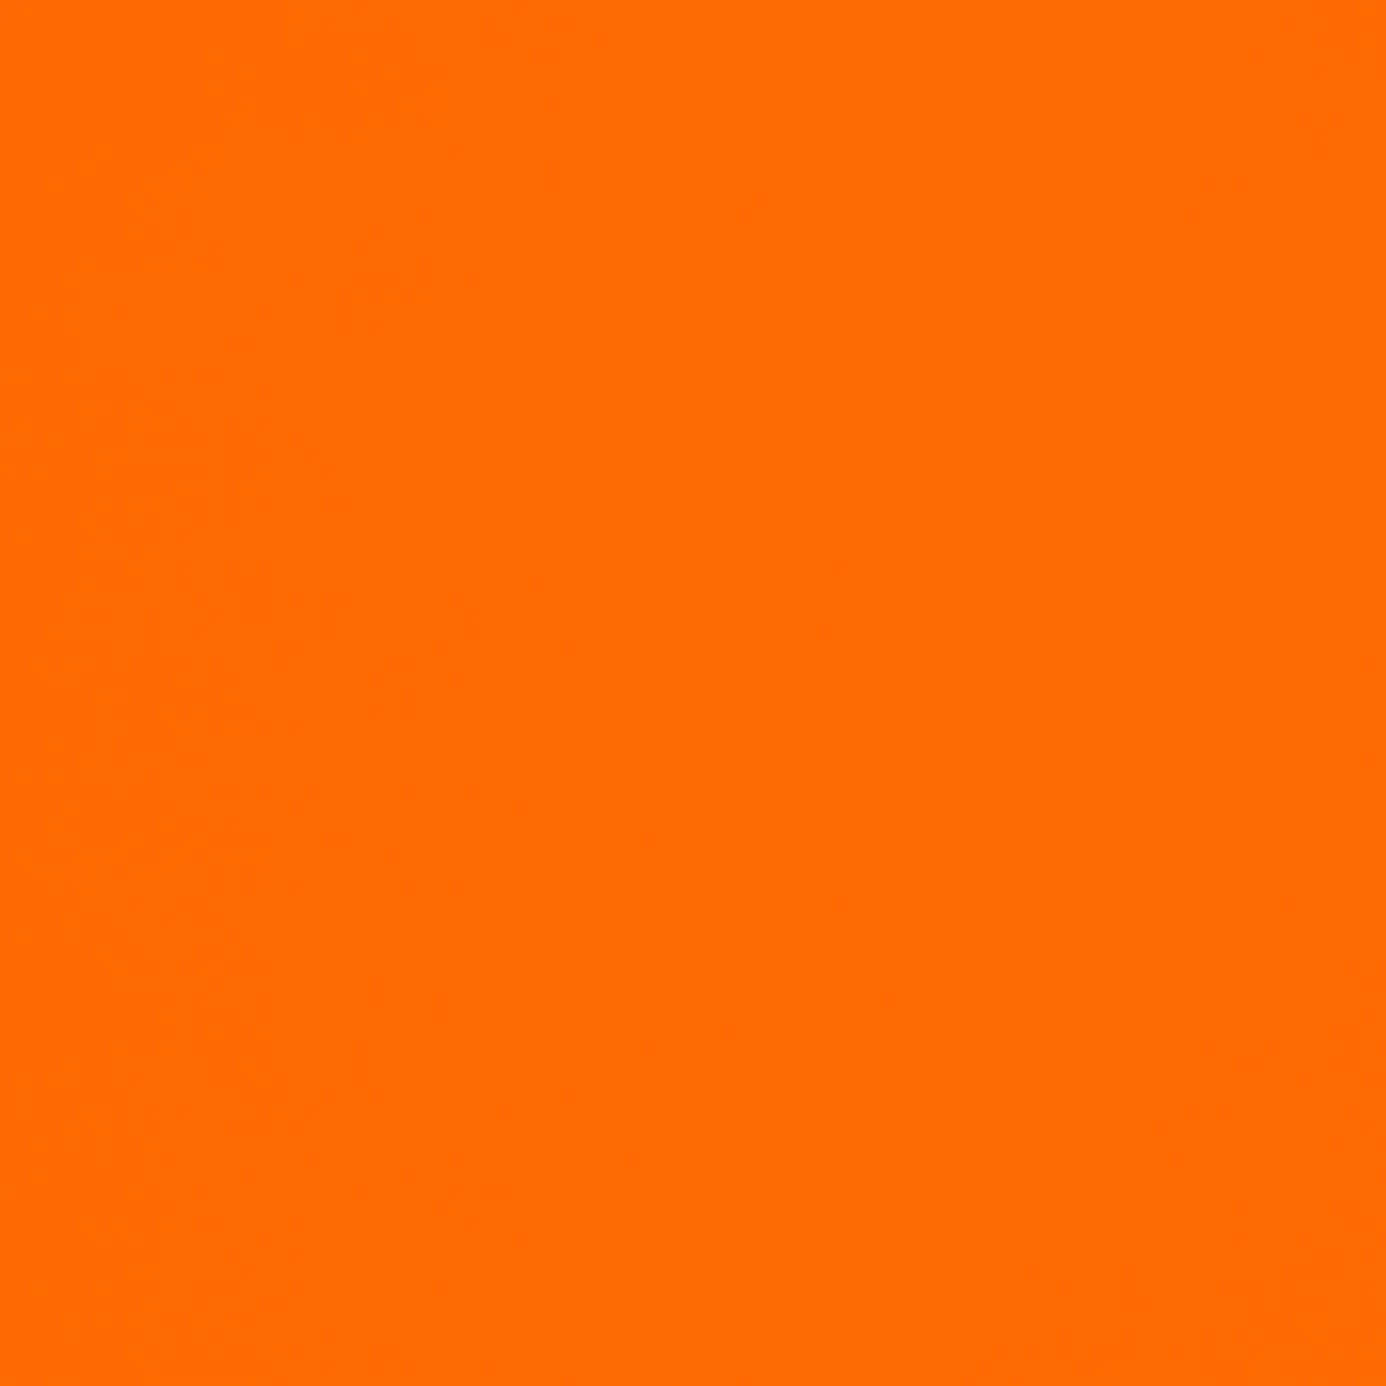 Unpatrón Naranja Brillante Y Animado. Fondo de pantalla